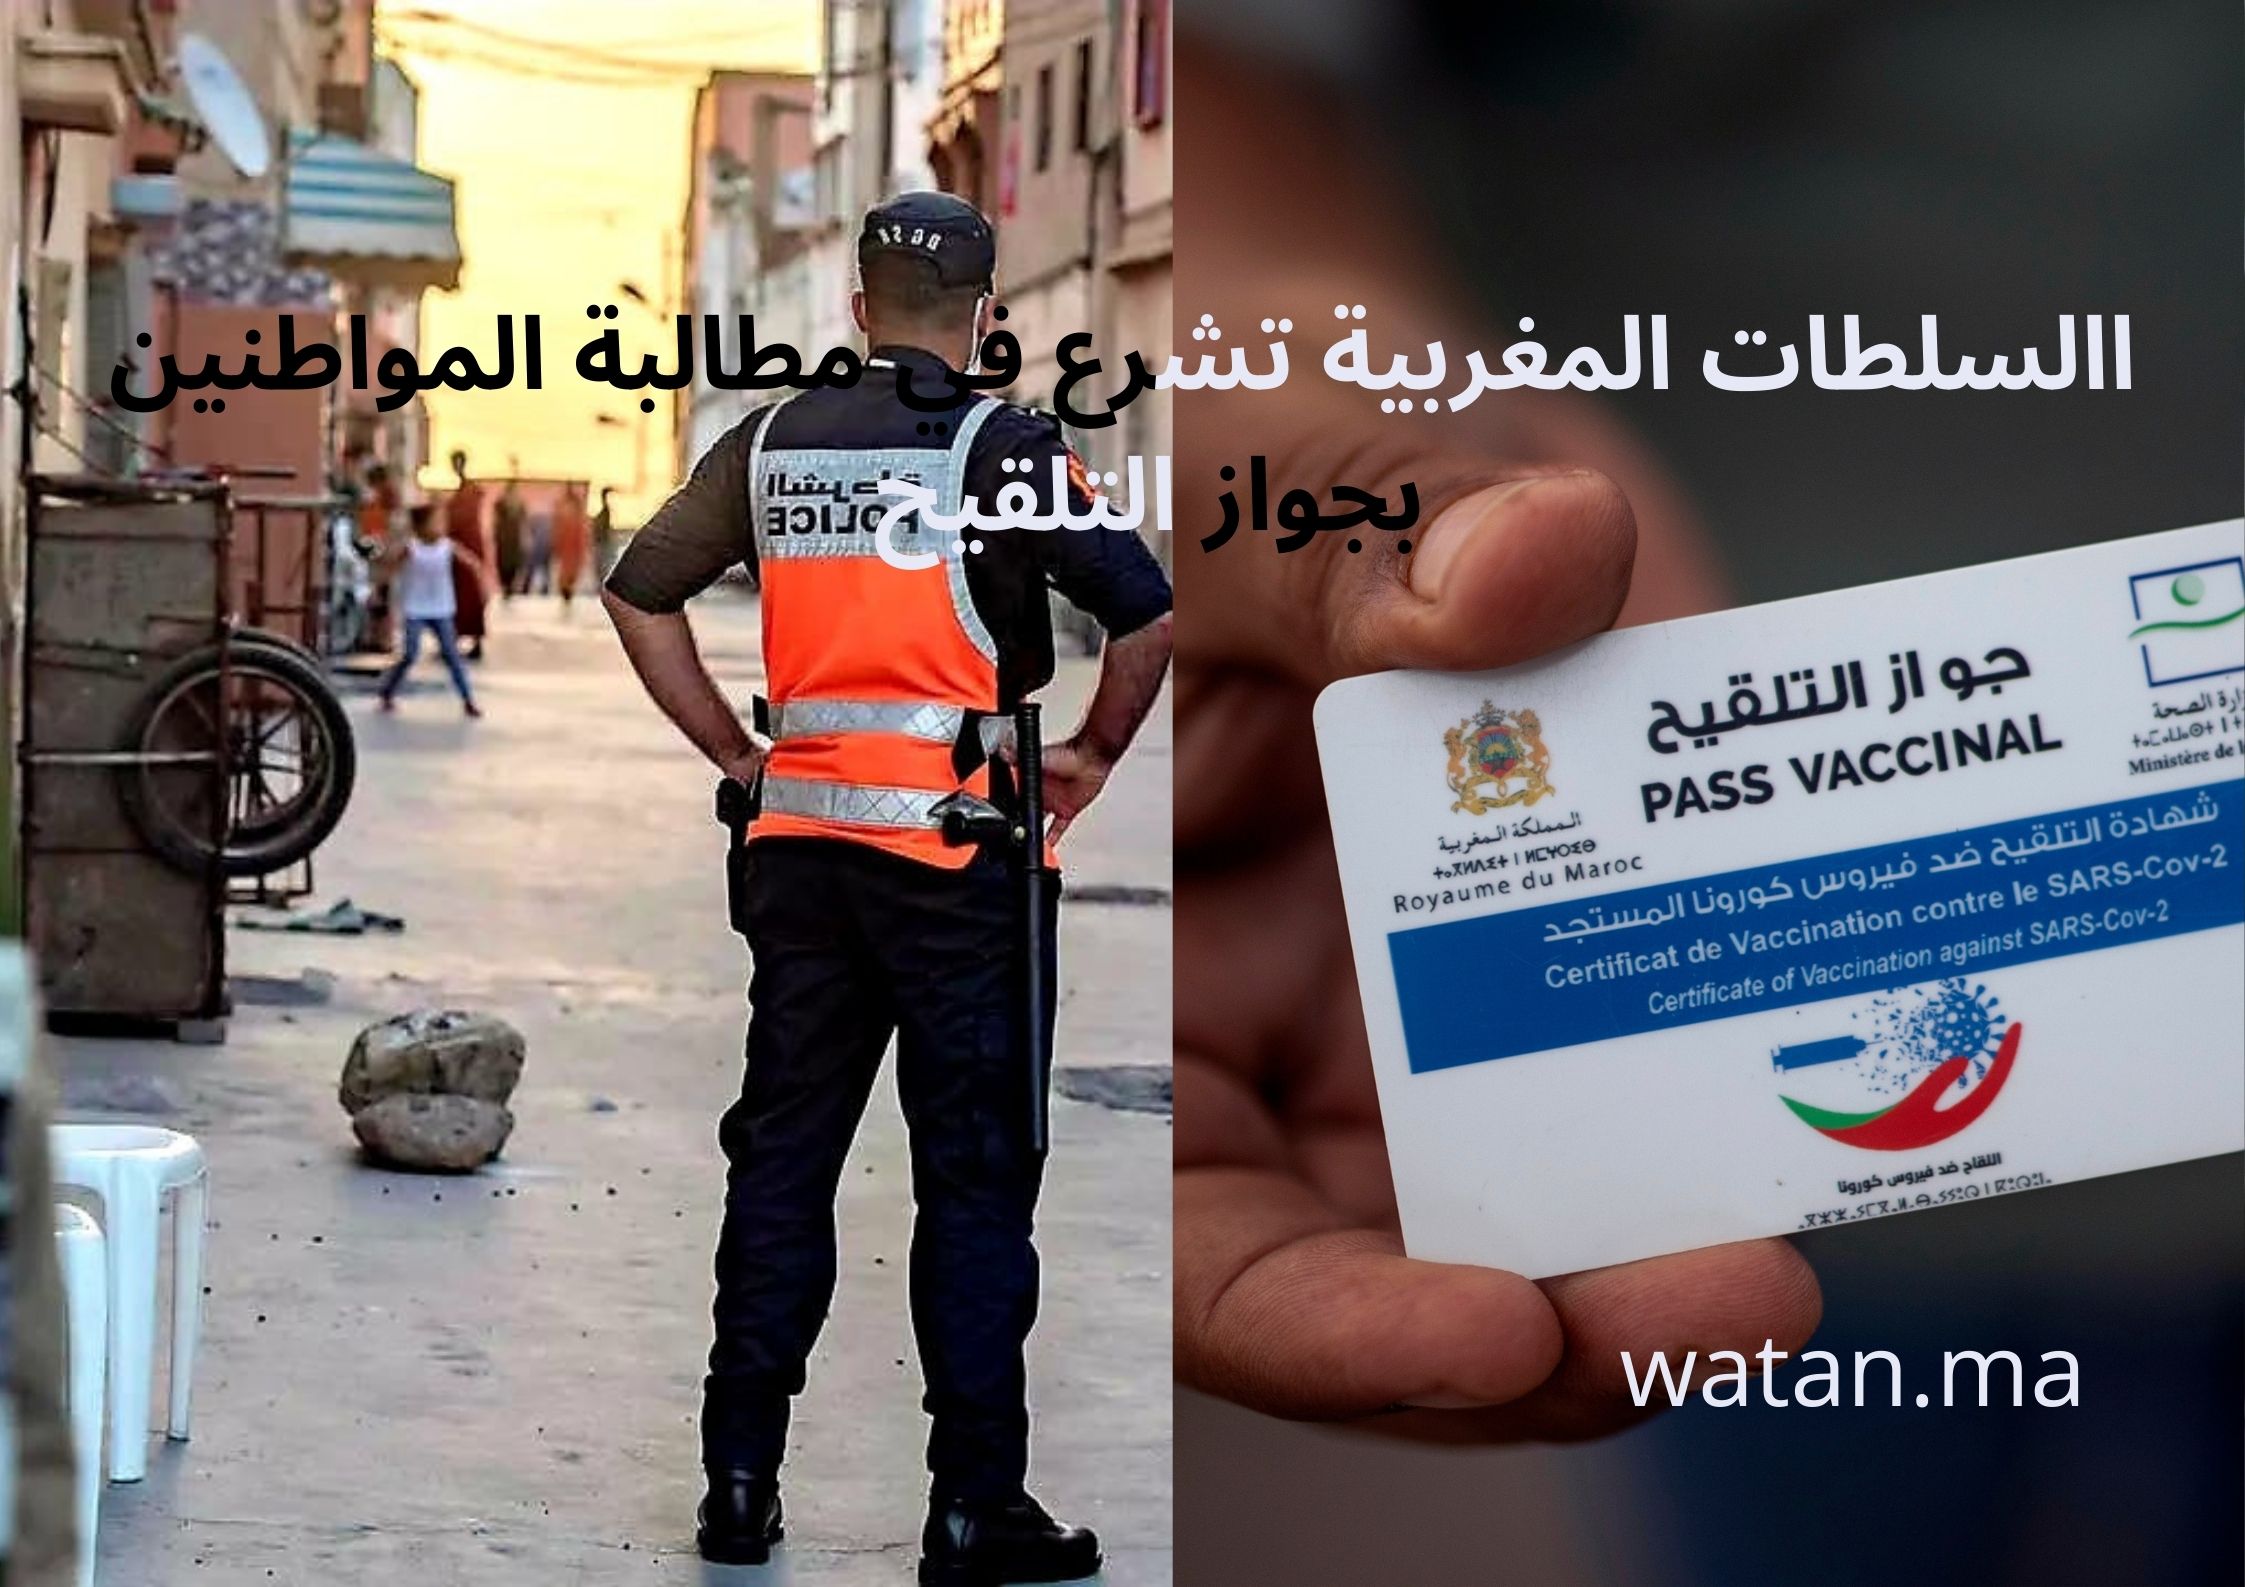 السلطات المغربية تشرع في مطالبة المواطنين بجواز التلقيح